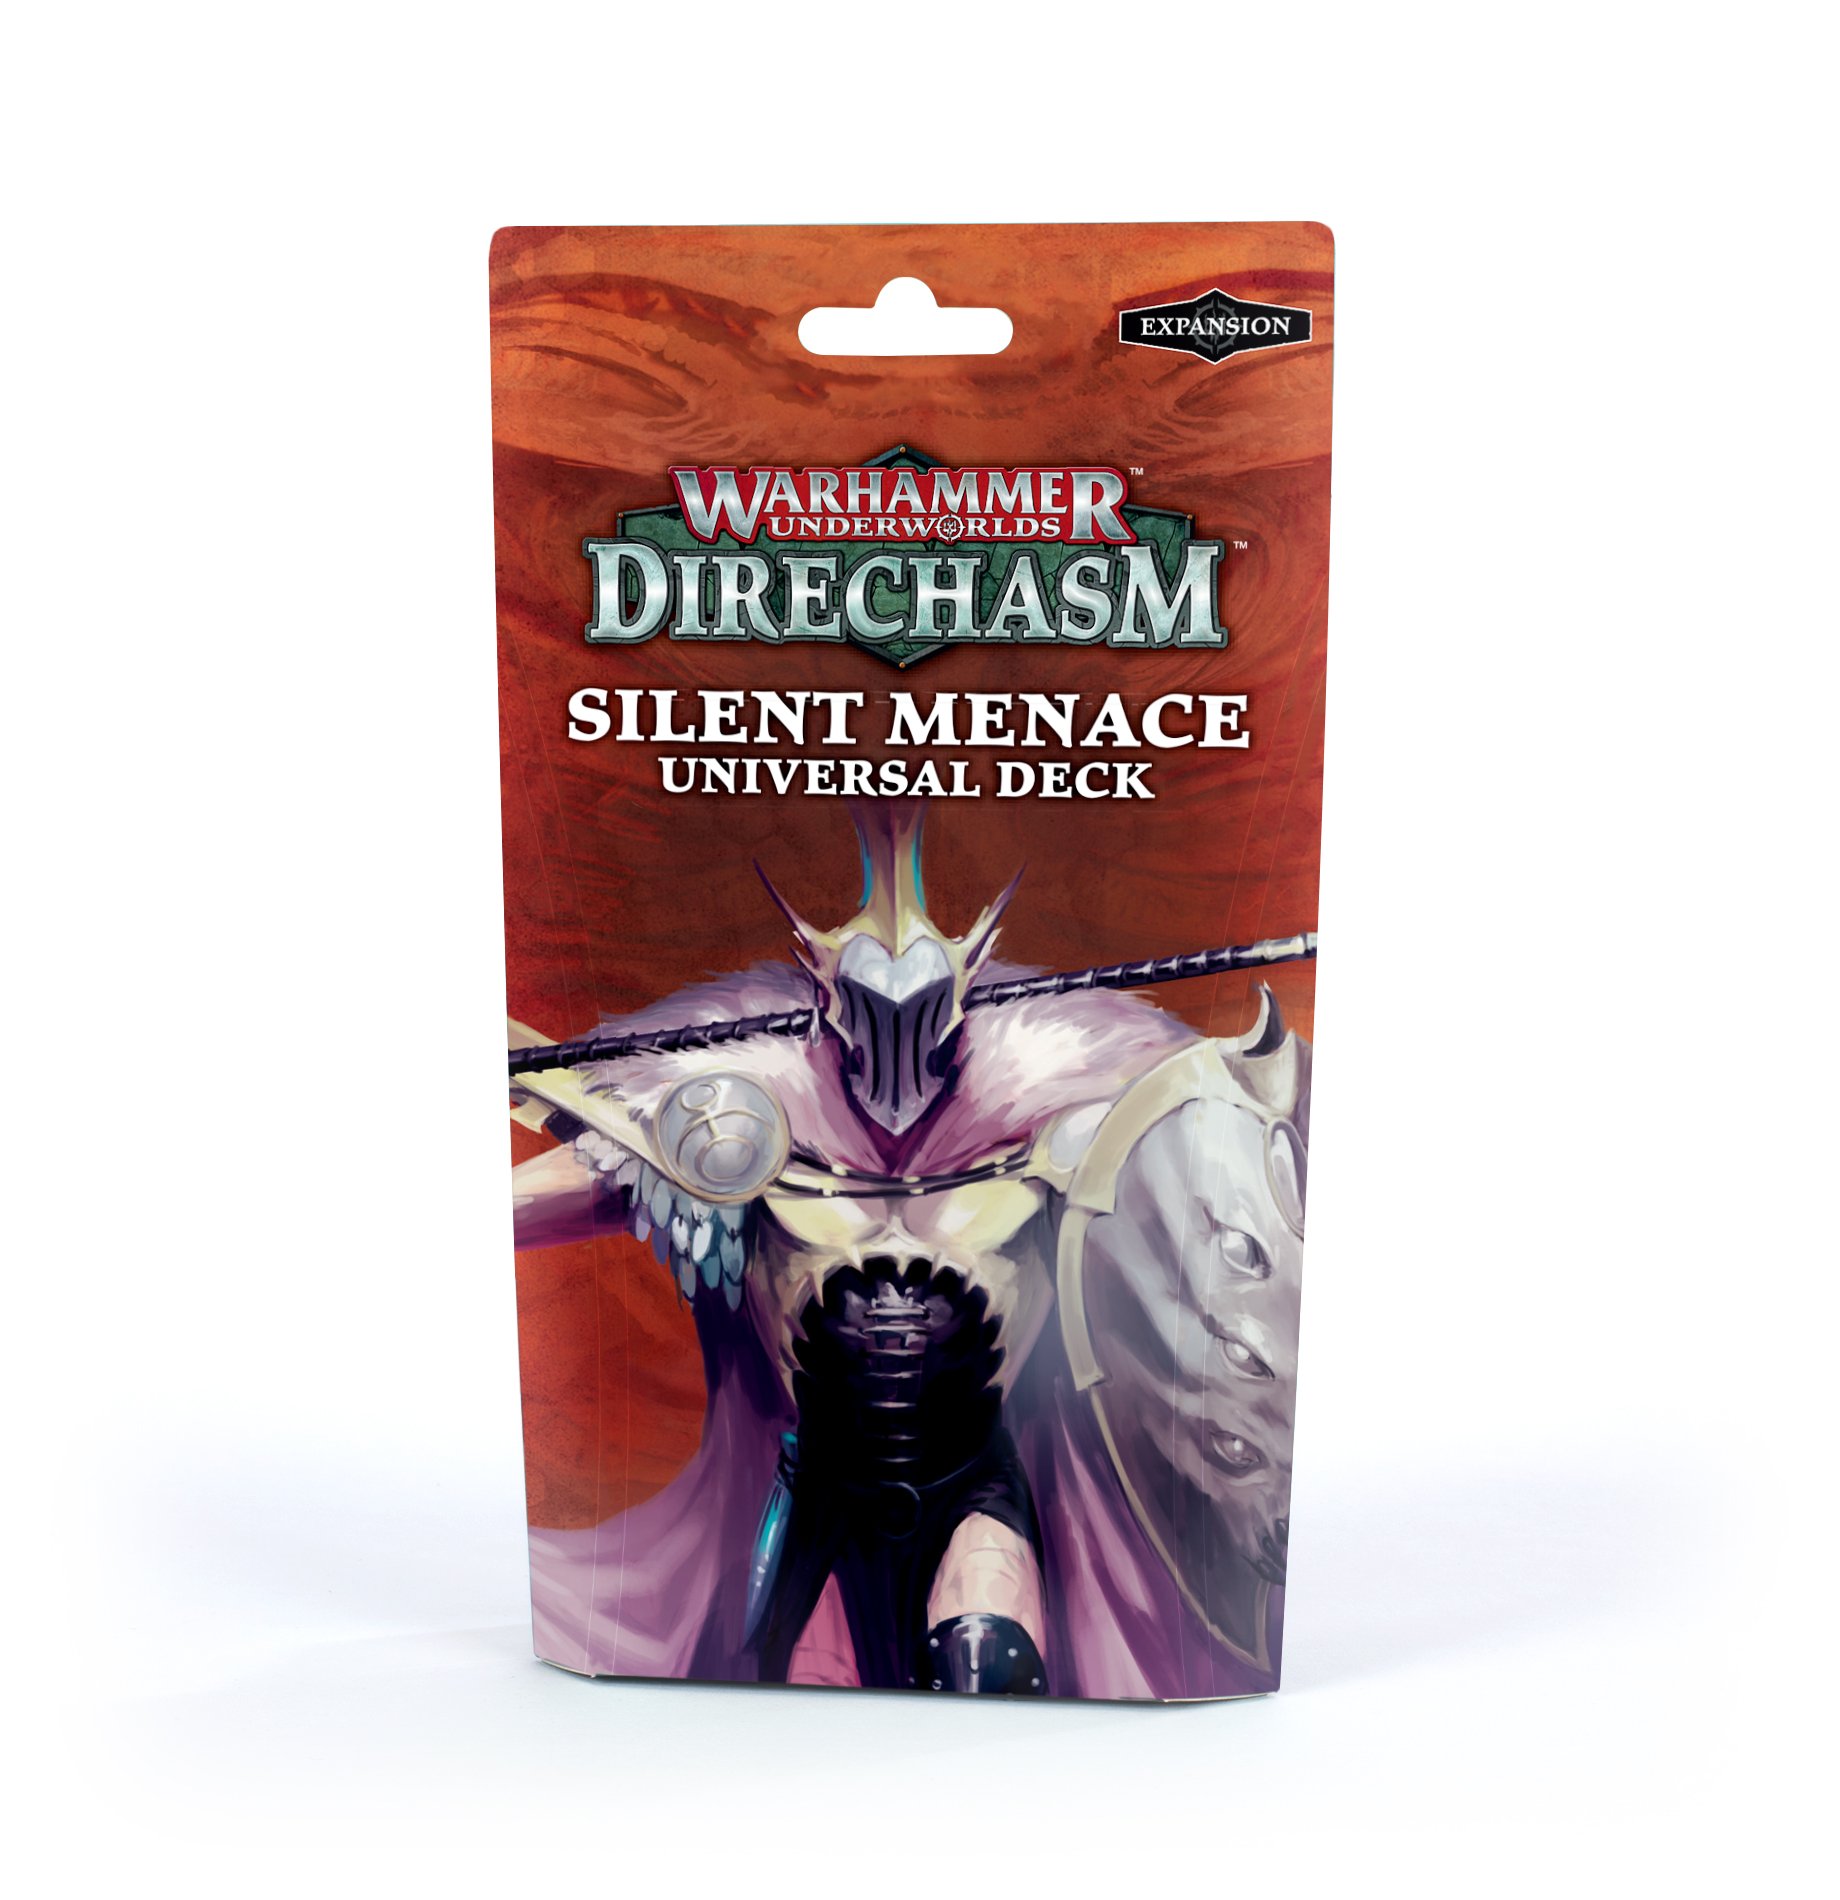 Warhammer Underworlds: Direchasm: Silent Menace Deck  